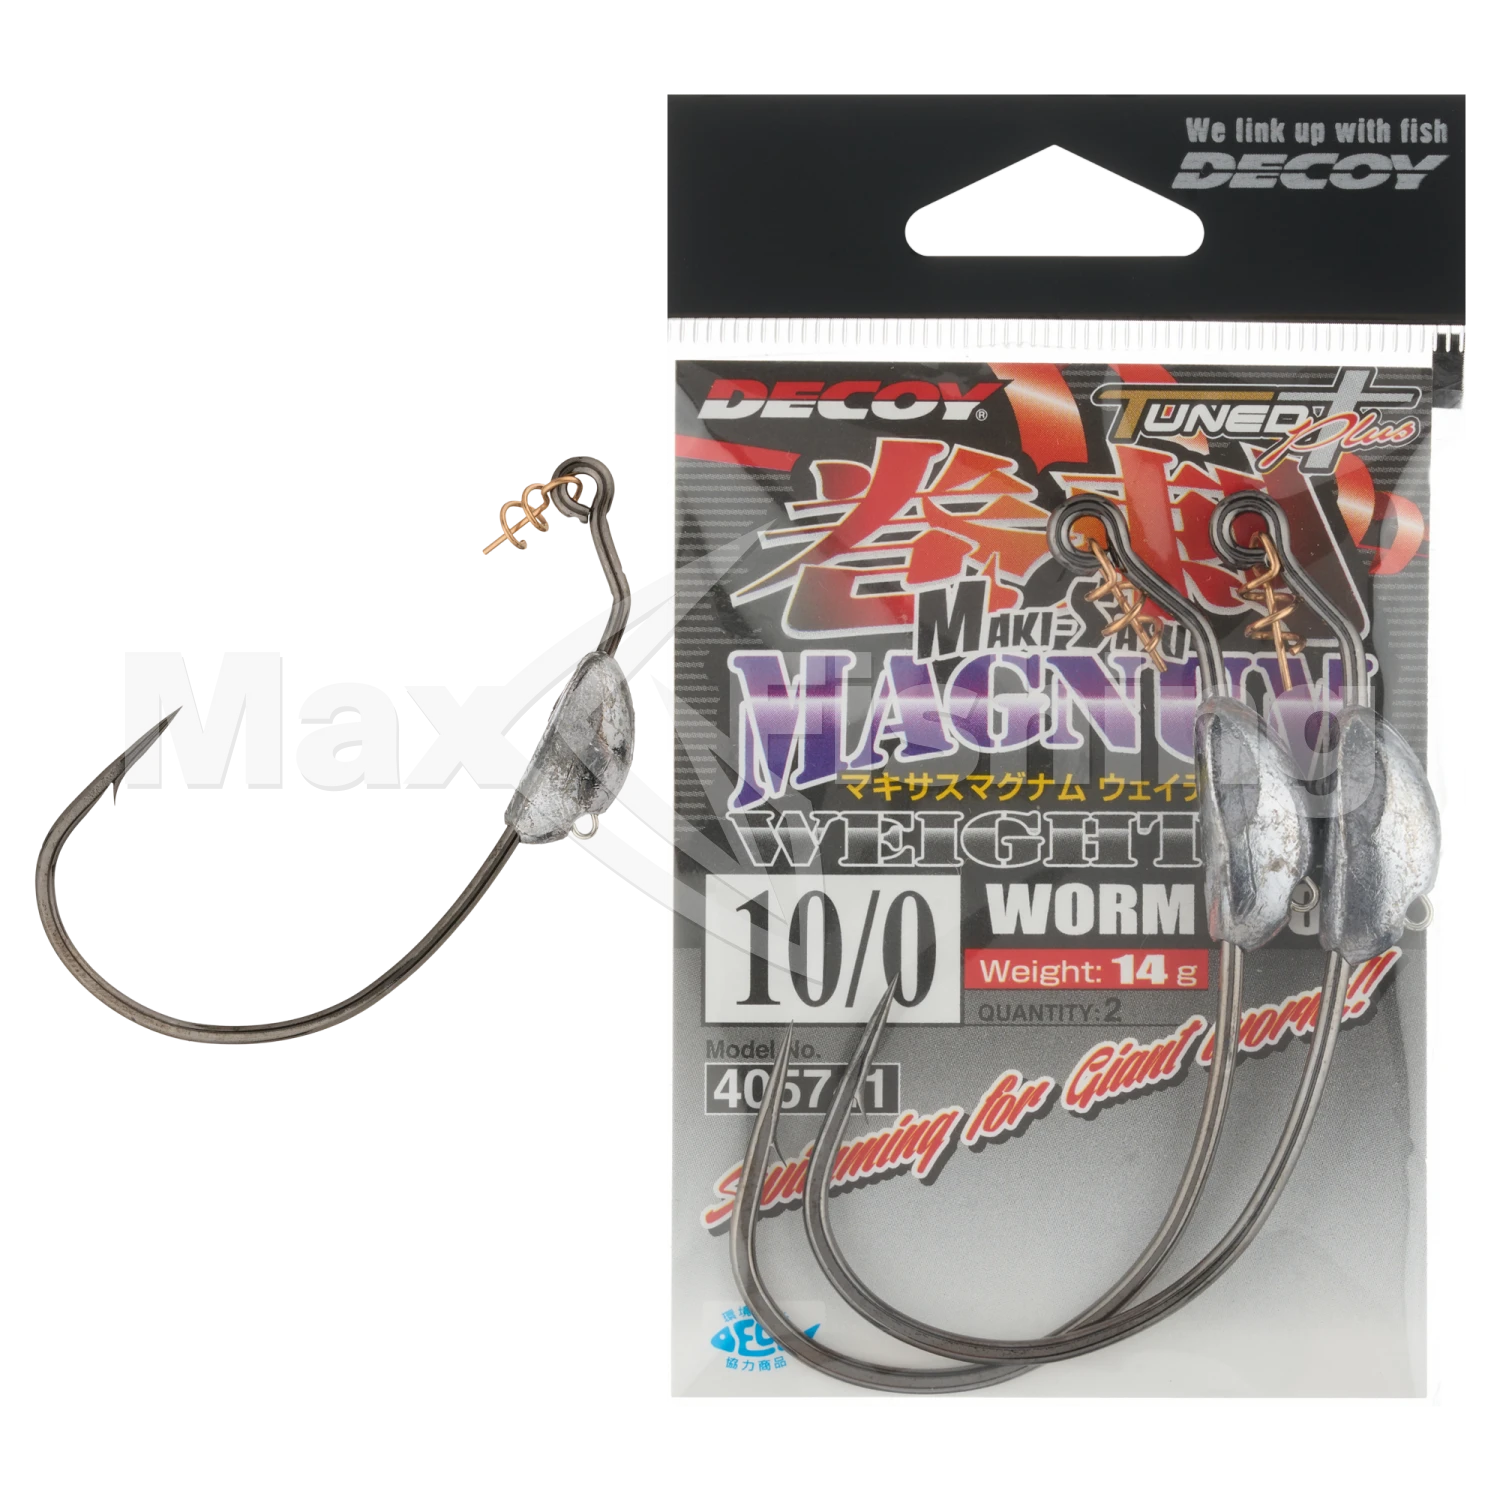 Крючок офсетный Decoy Worm 130M Makisasu Magnum Weighted #10/0 (2шт)